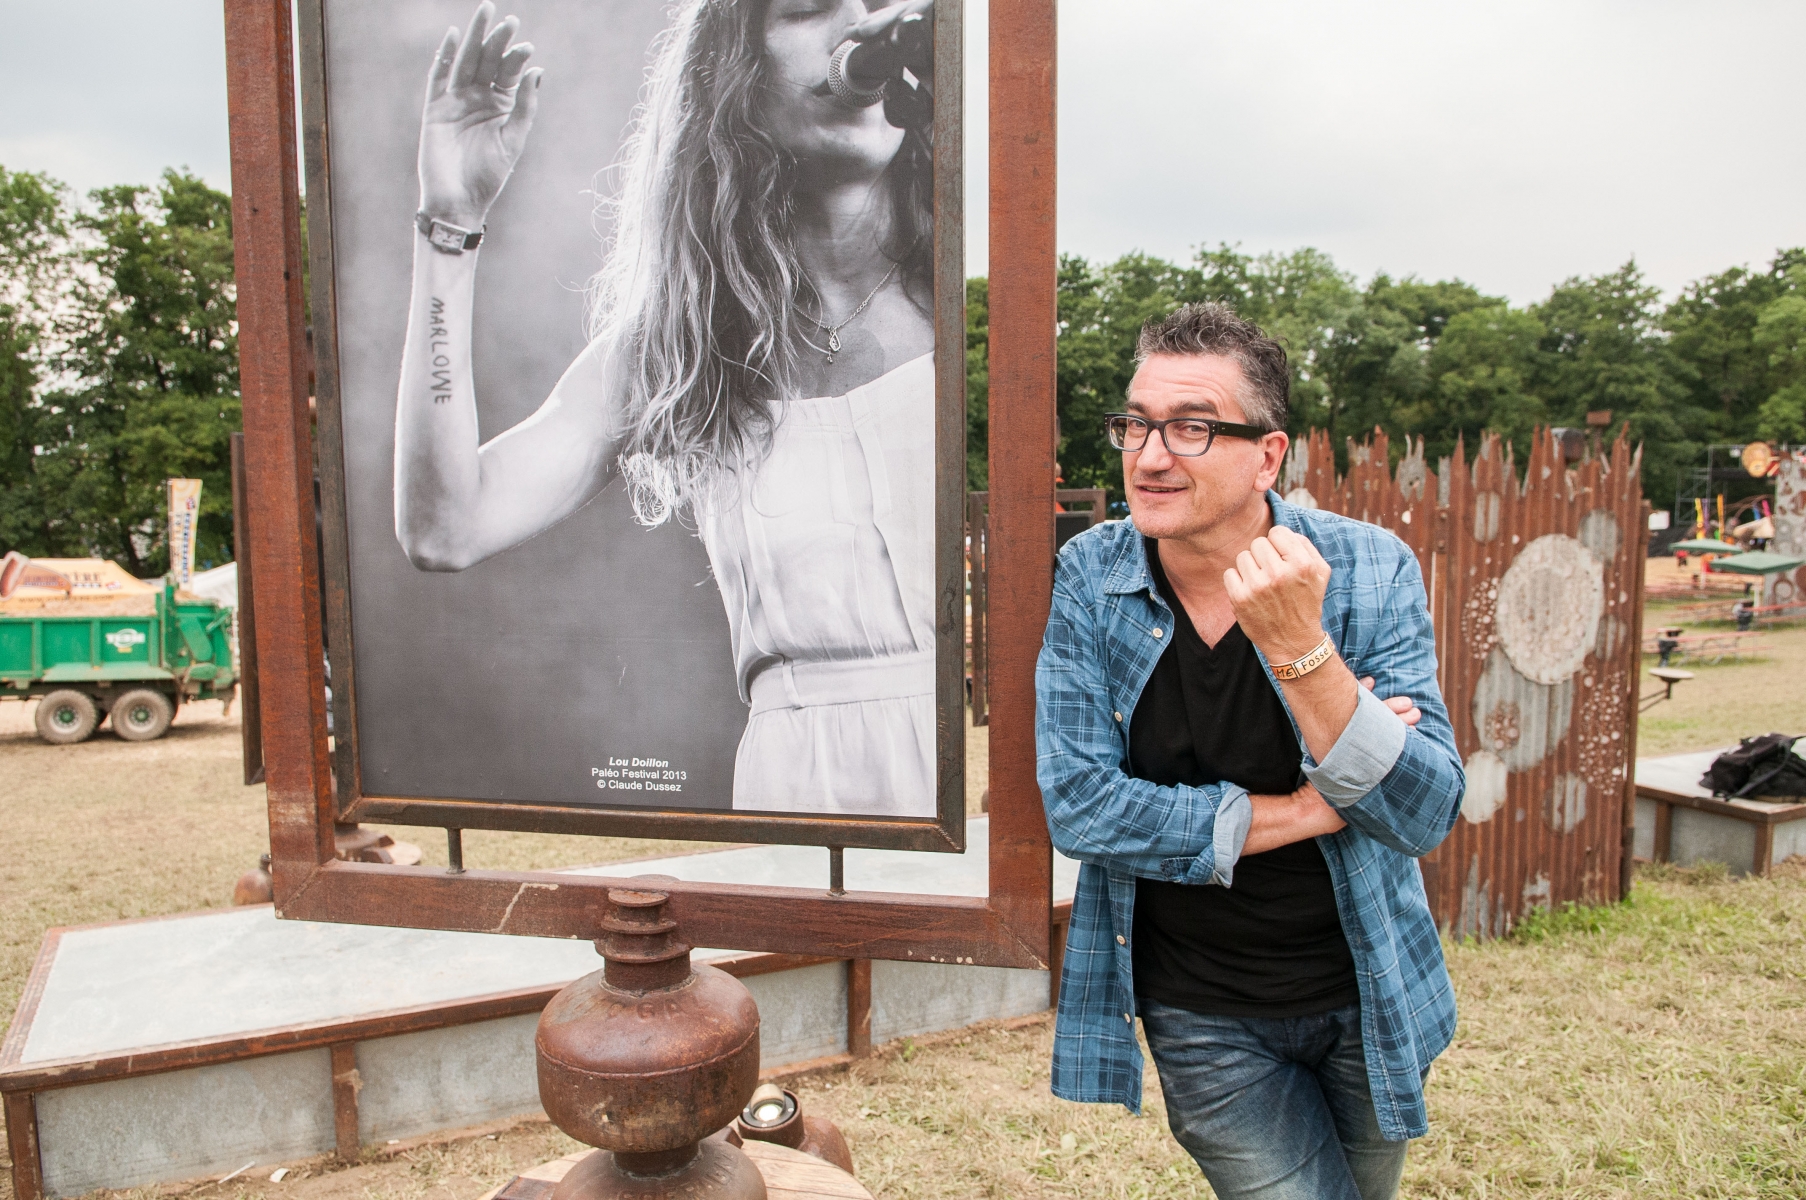 Nyon, mercredi 23.07.2014, Paléo 2014, portrait de Claude Dussex, photographe du Paléo, expose ses images à Paléo, photos Cédric Sandoz